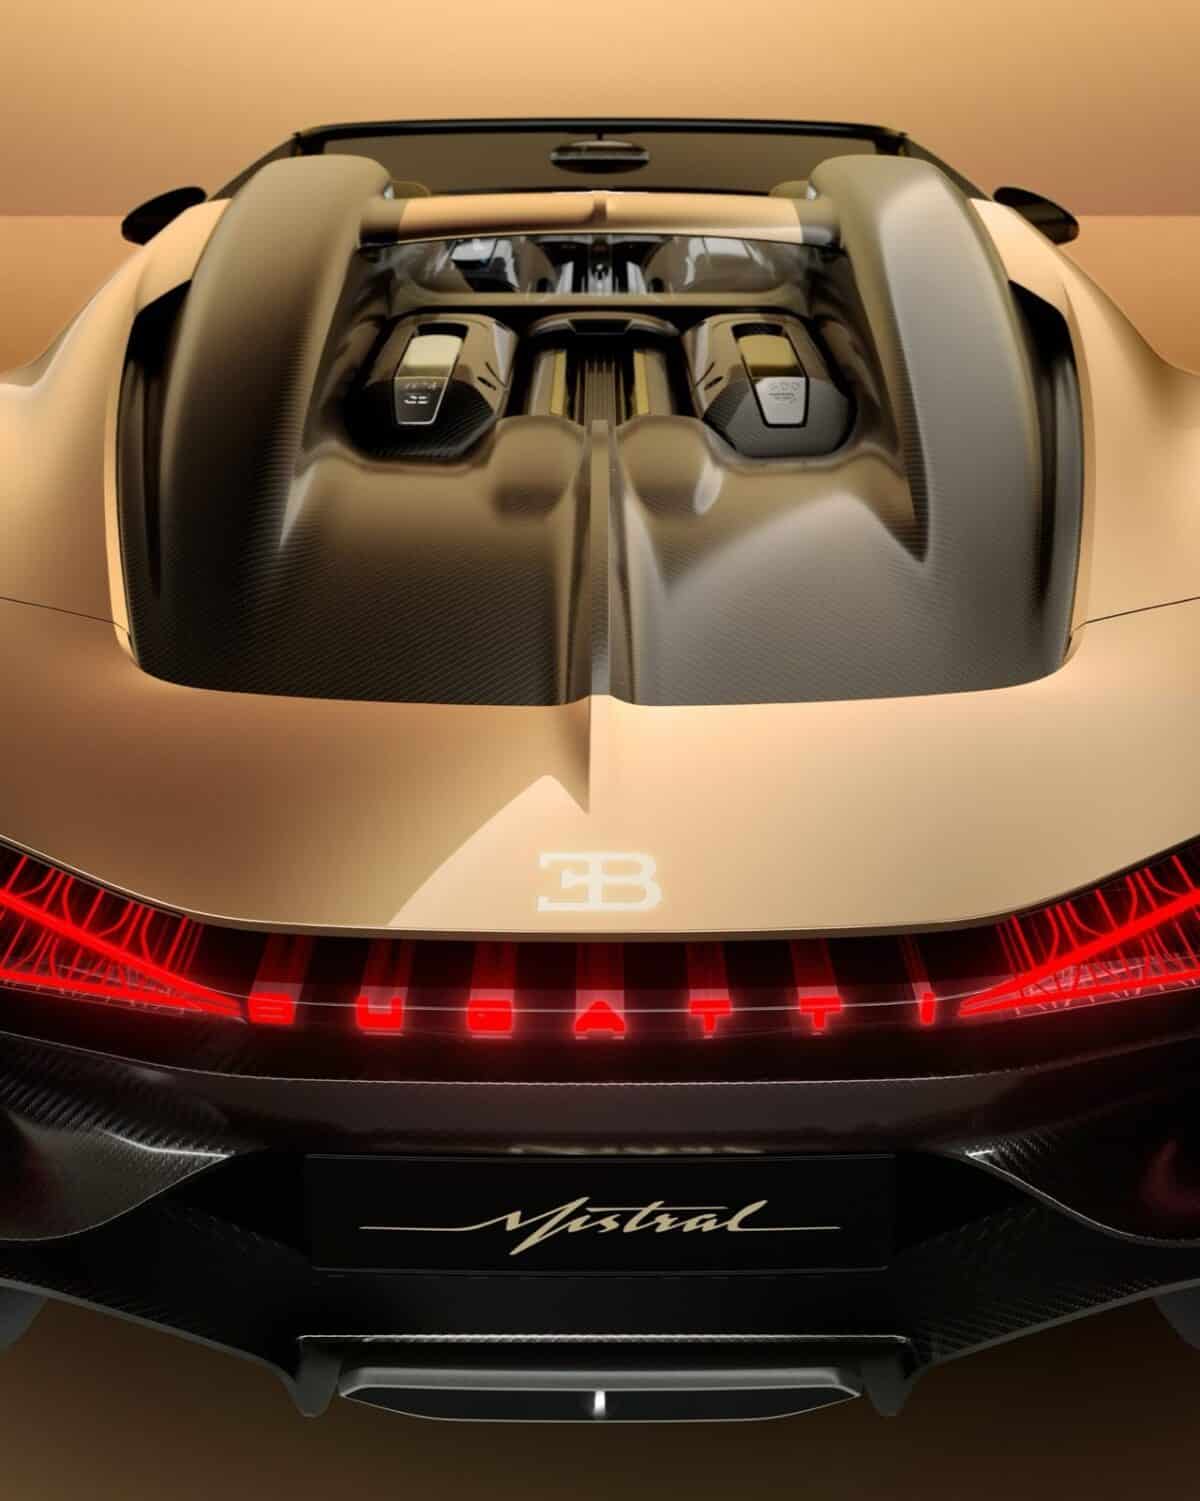 Bugatti W16 Mistral in gold